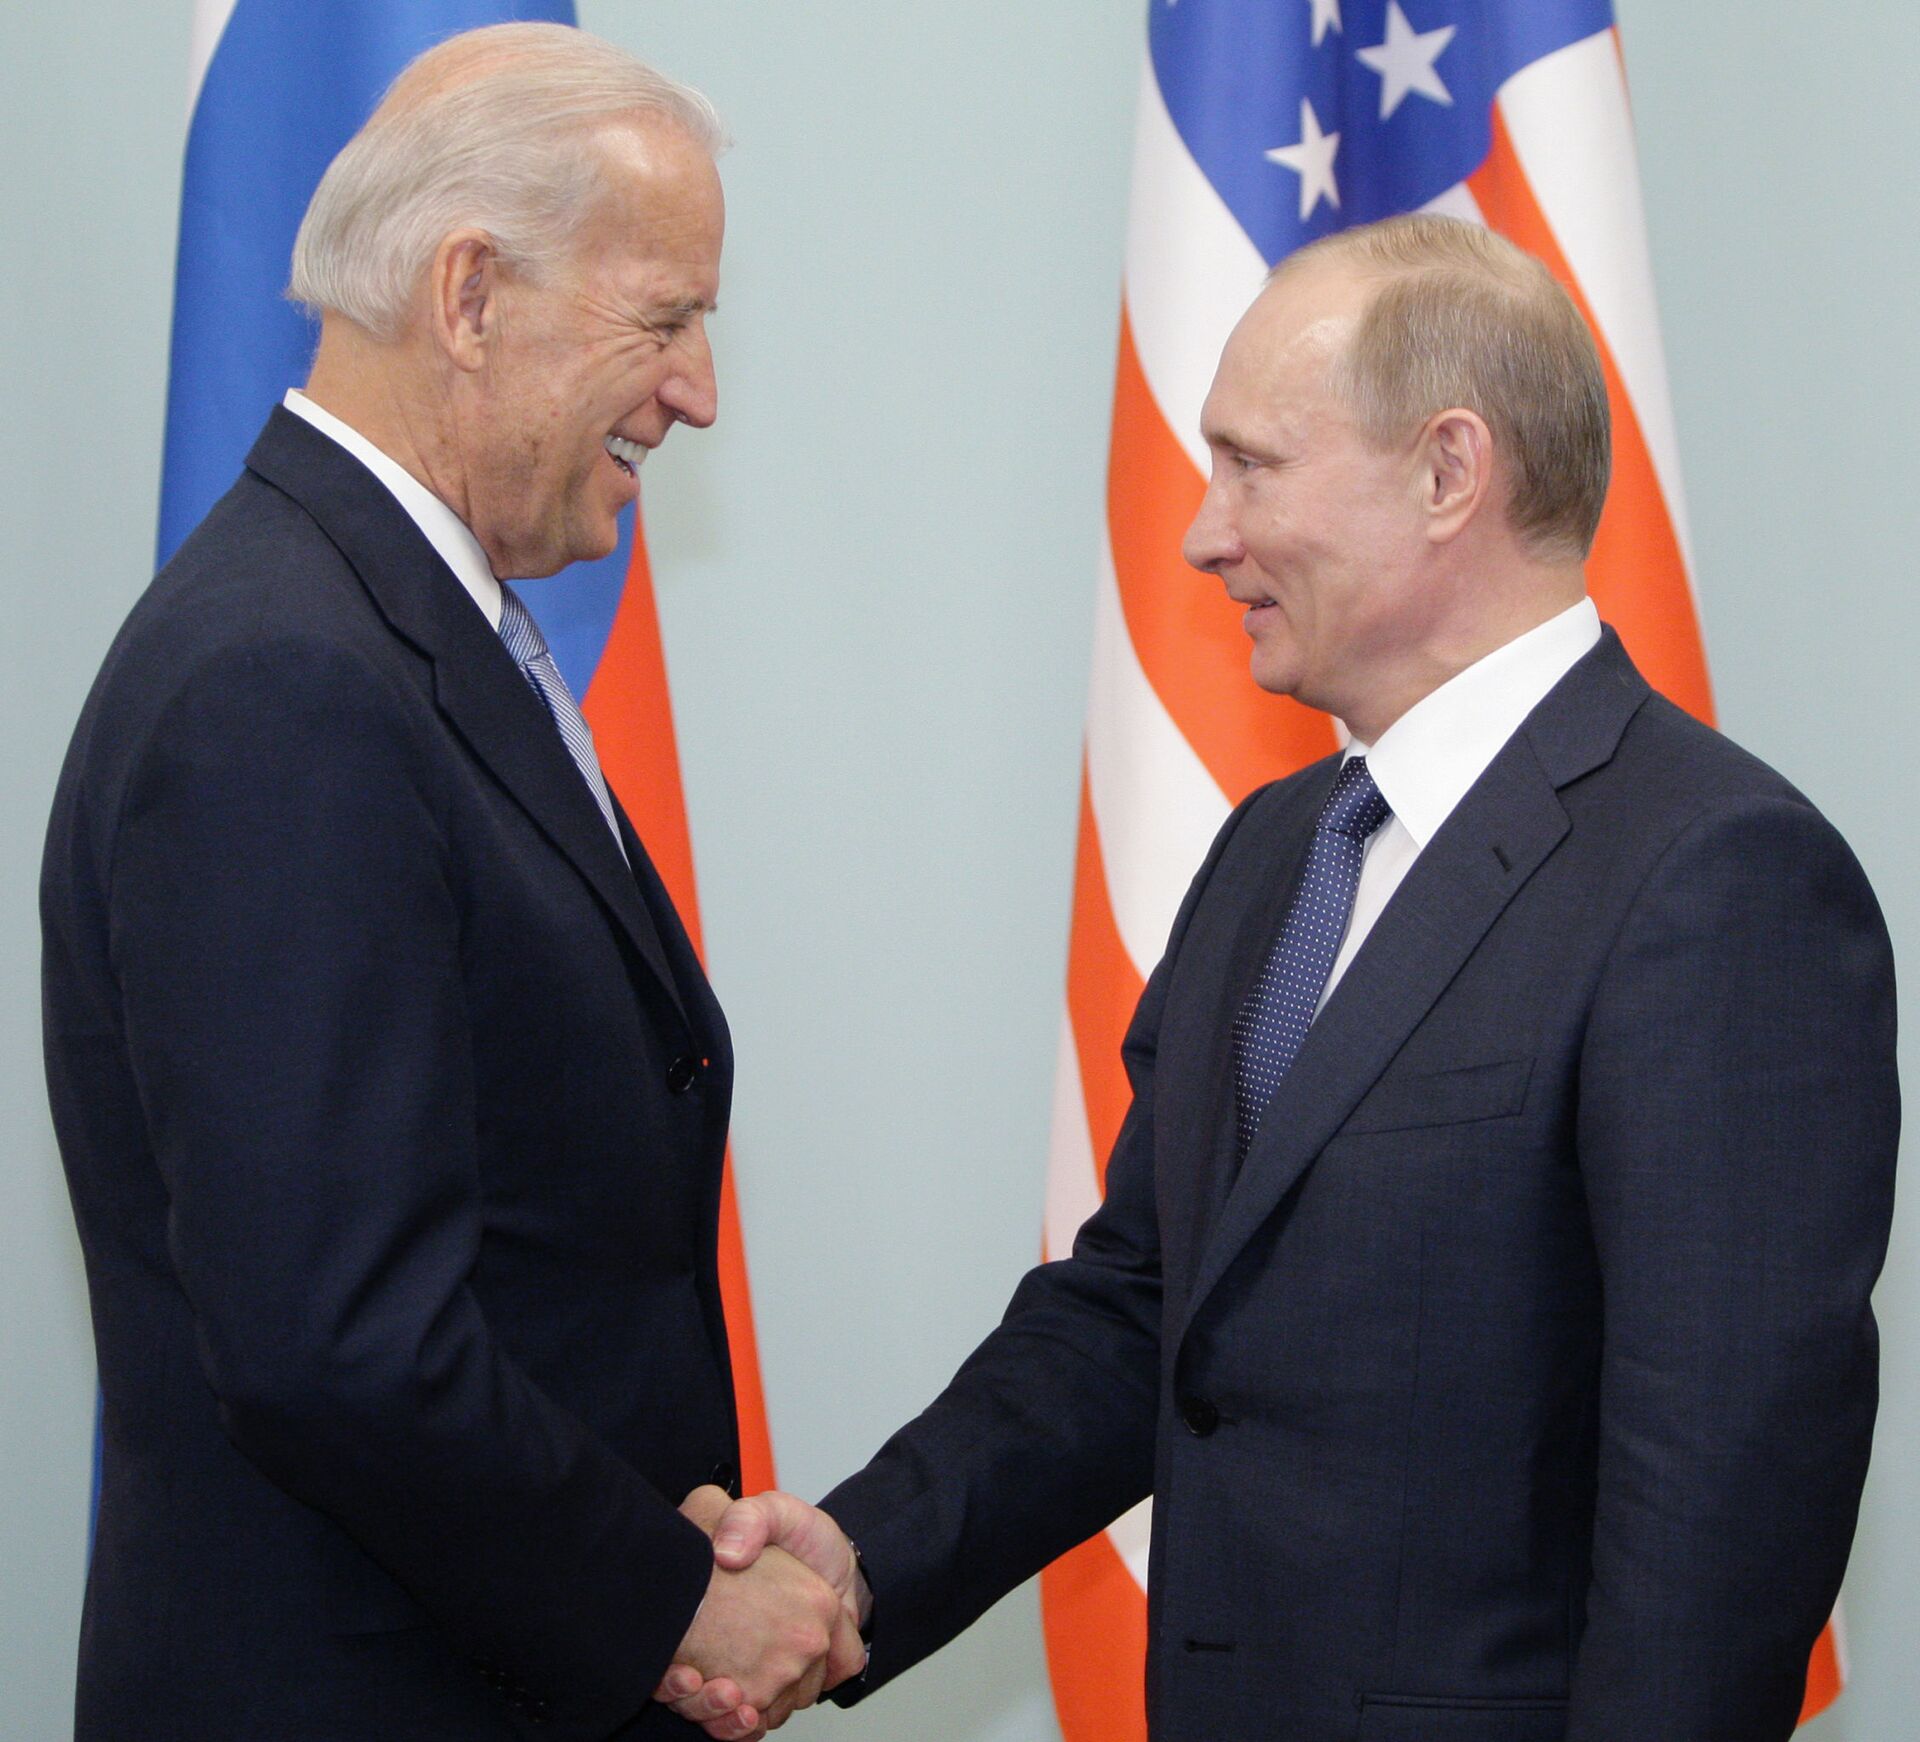 Biden reforça desejo de realizar cúpula com Putin apesar das tensões sobre Ucrânia - Sputnik Brasil, 1920, 07.05.2021